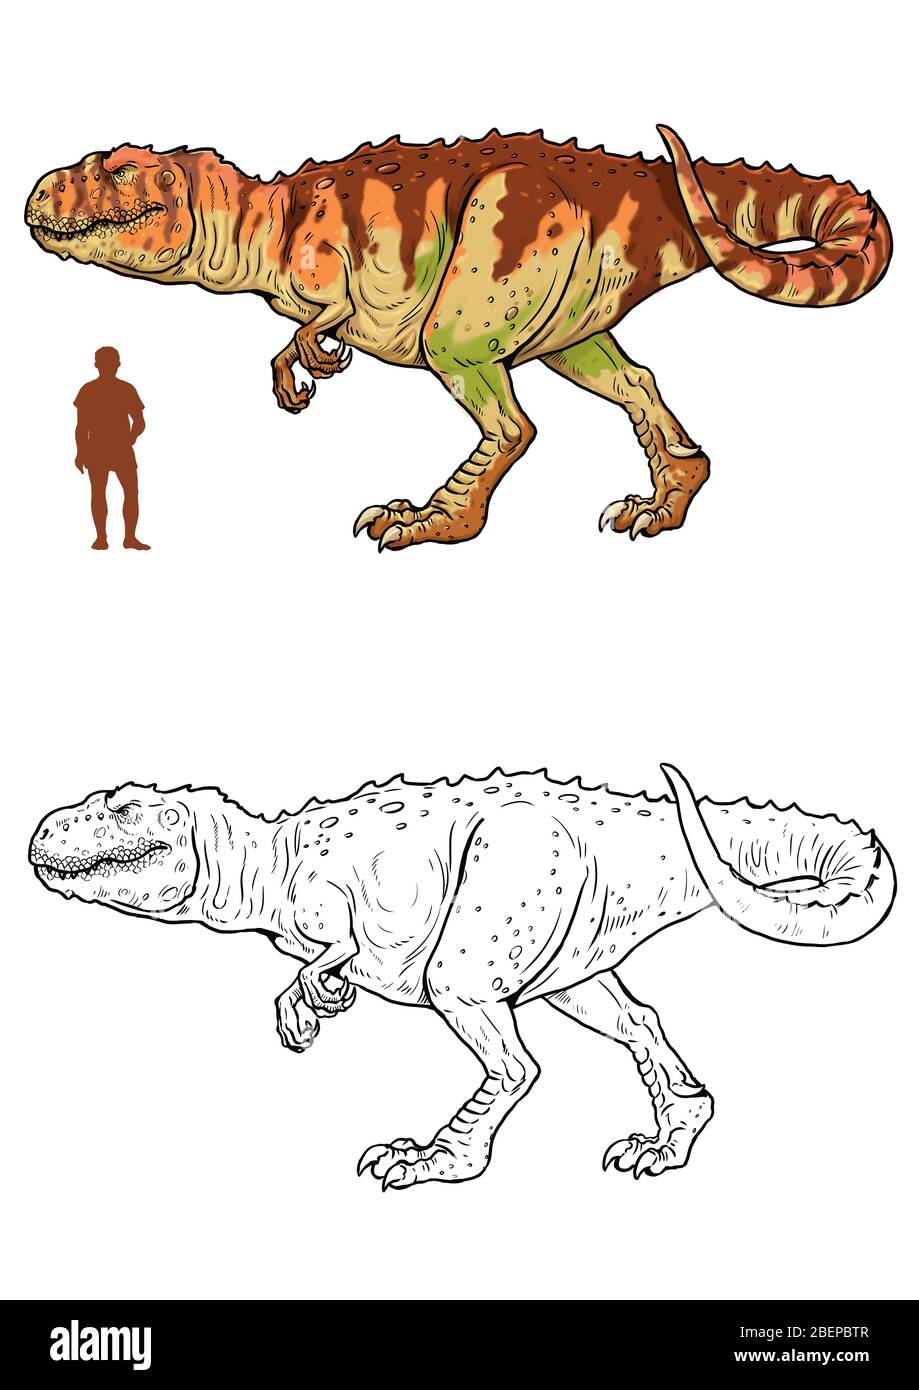 Dinosaure carnivore - giganotosaurus. Comparaison entre le dinosaure et l'homme. Page coloration Dino. Banque D'Images